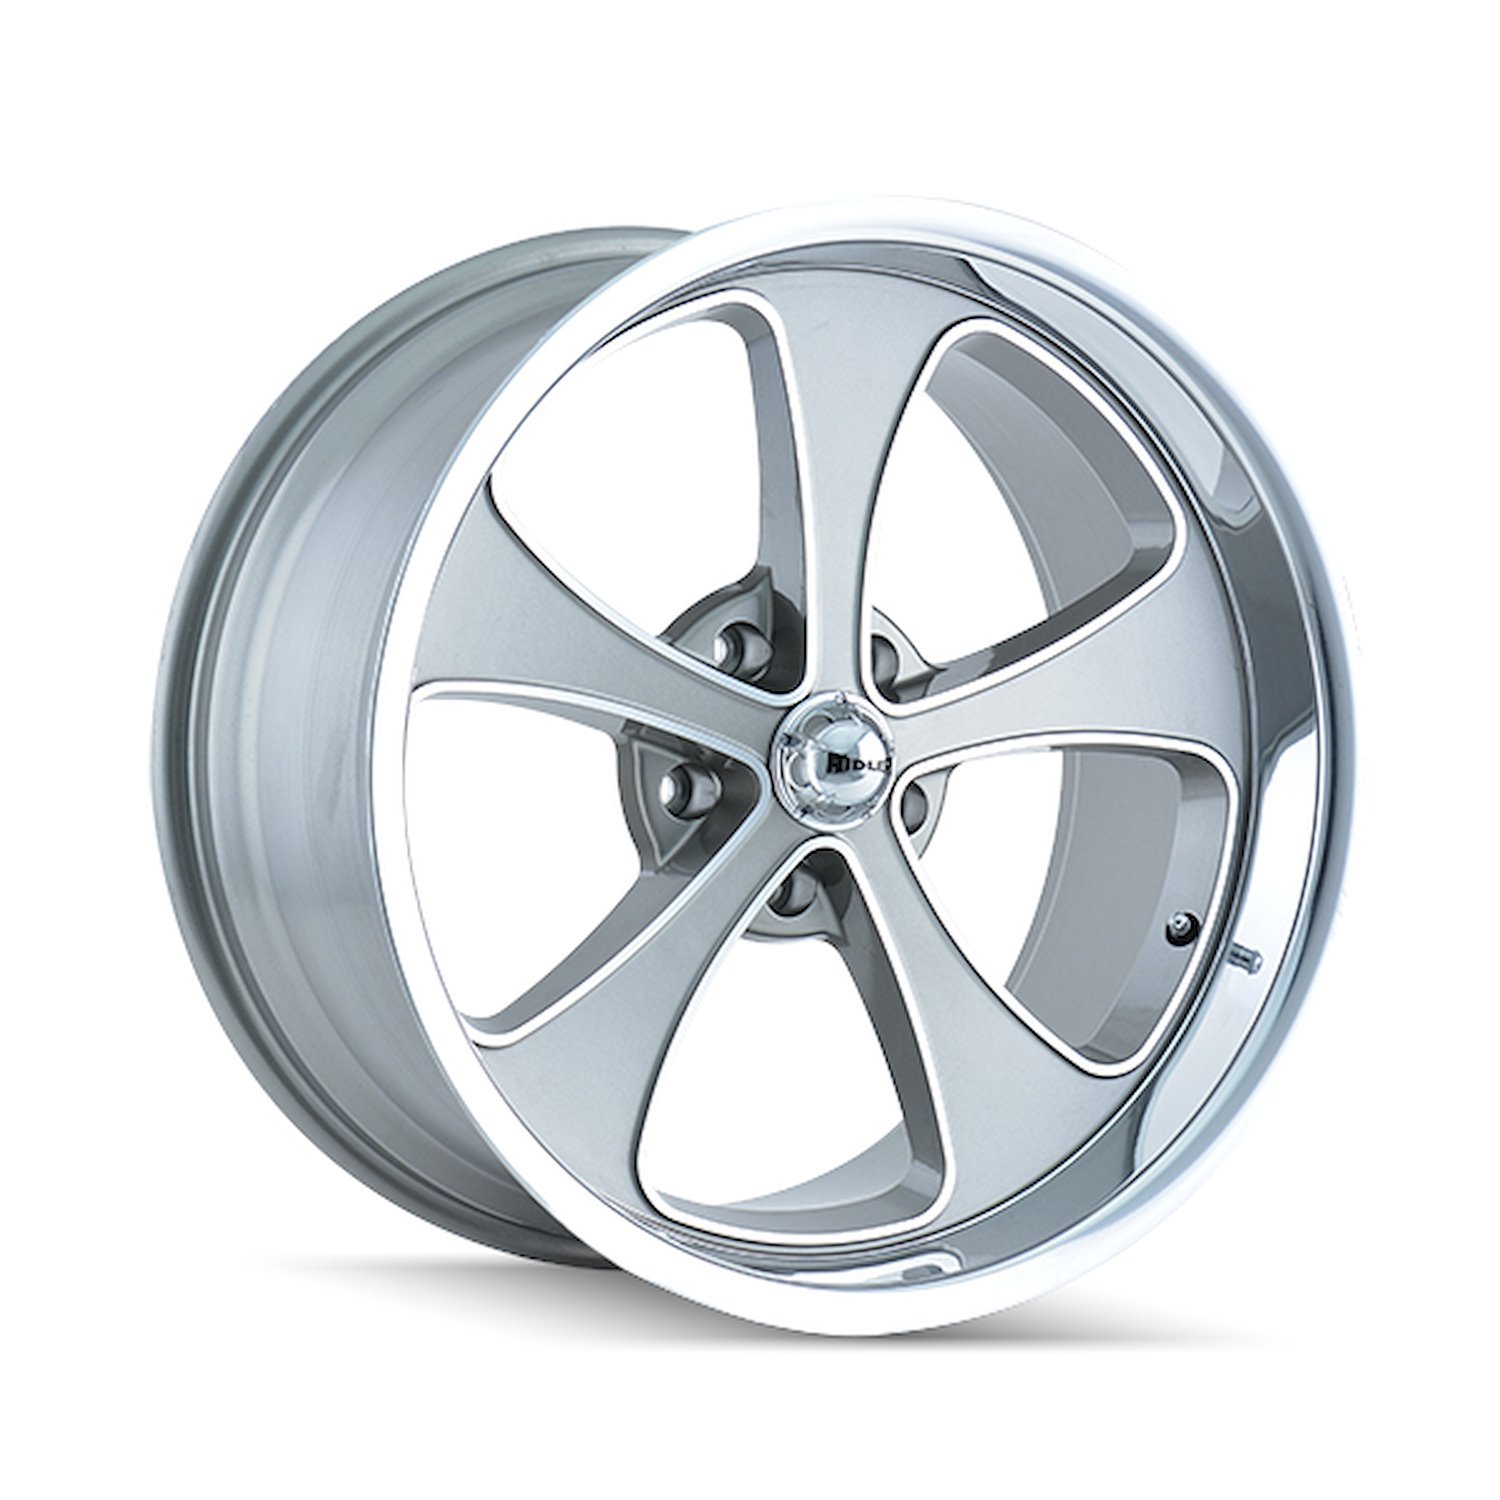 645-2161GP 645-Series Wheel [Size: 20" x 10"] Gloss Grey Machined/Polished Finish